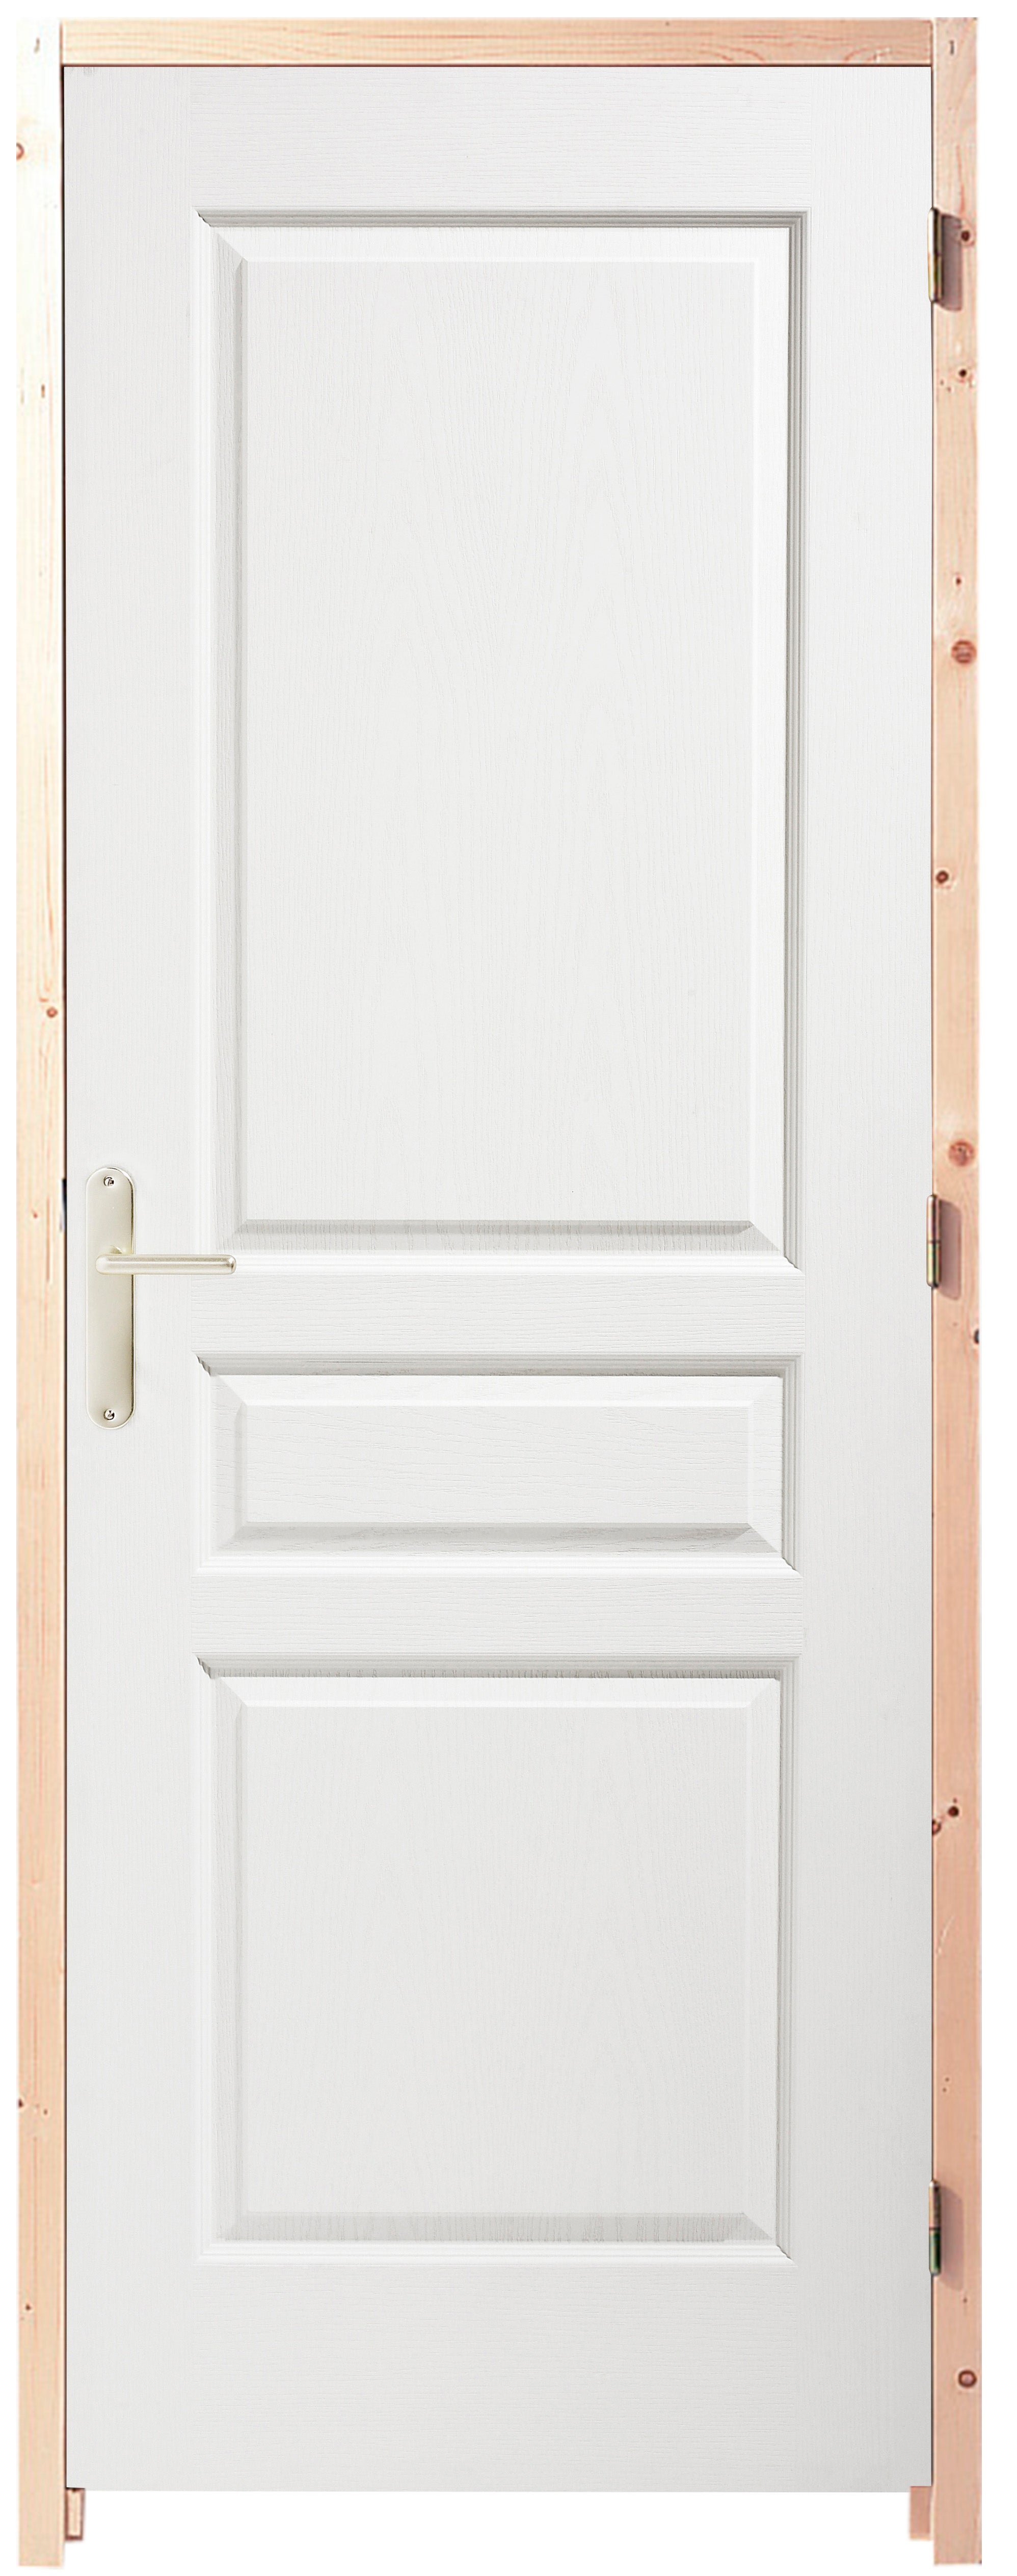 Poignée de porte en Inox pour toutes portes intérieures AGT, Quincaillerie